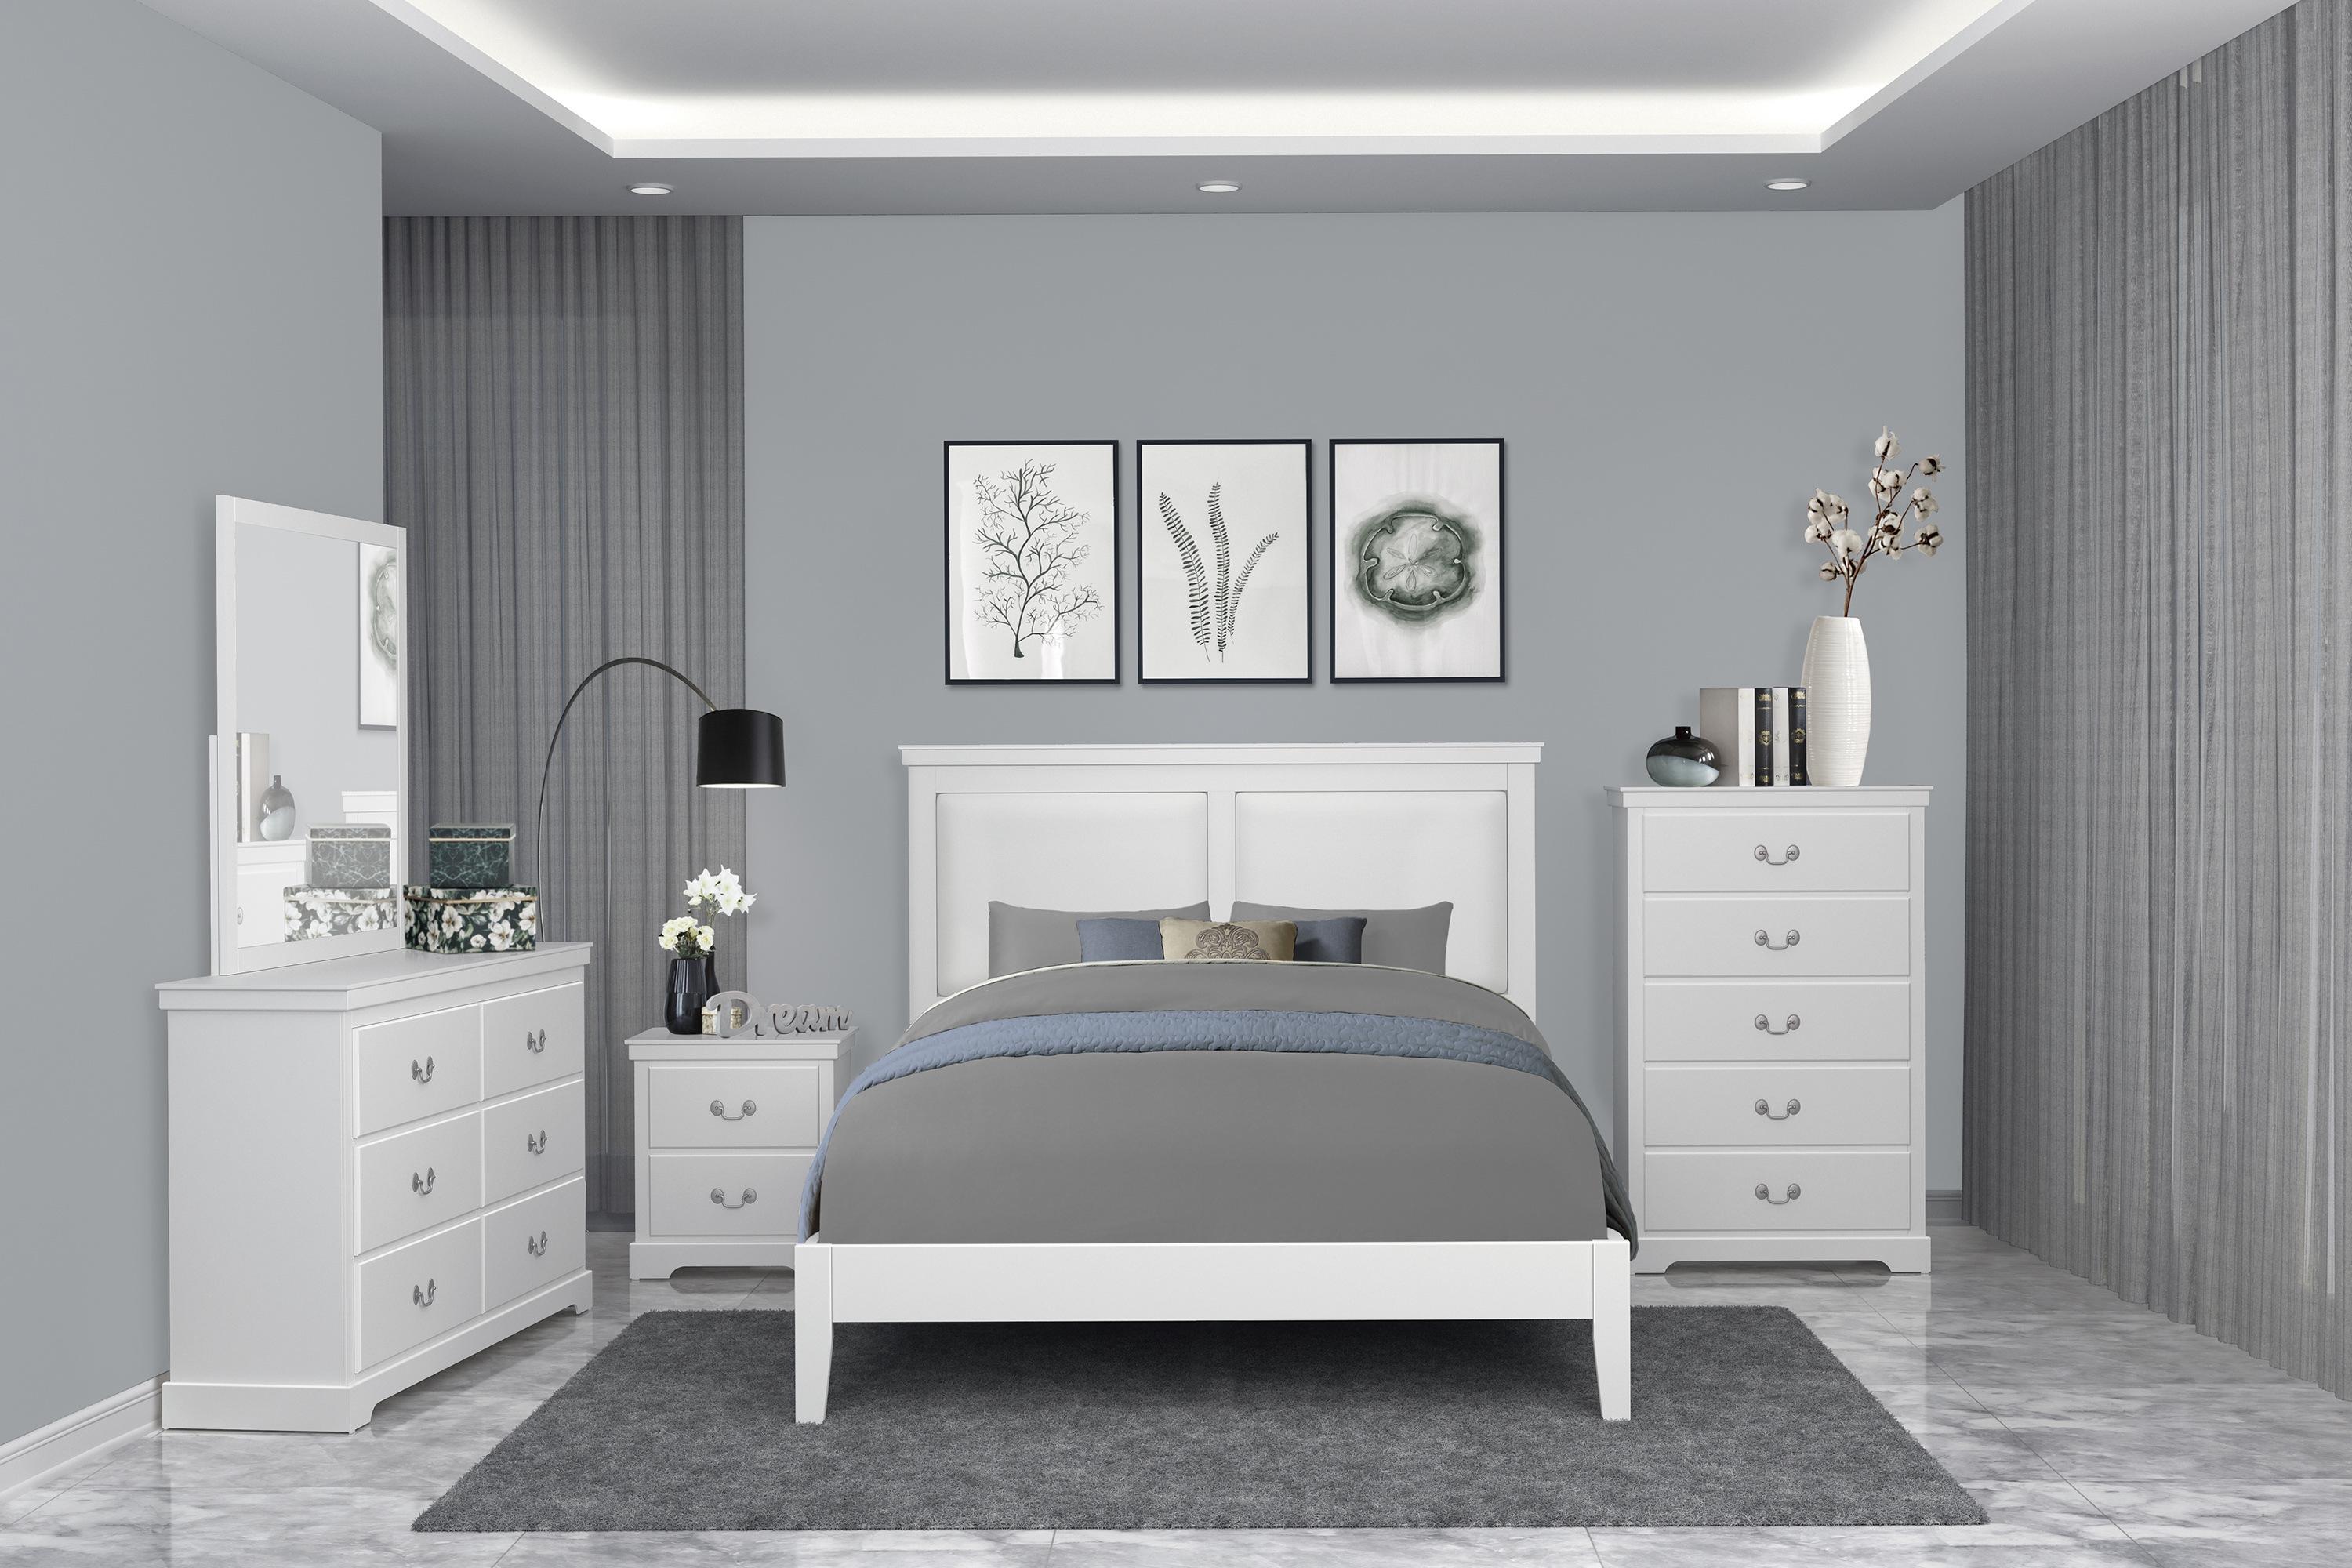 

    
1519WHK-1EK-3PC Modern White Wood King Bedroom Set 3pcs Homelegance 1519WHK-1EK* Seabright
